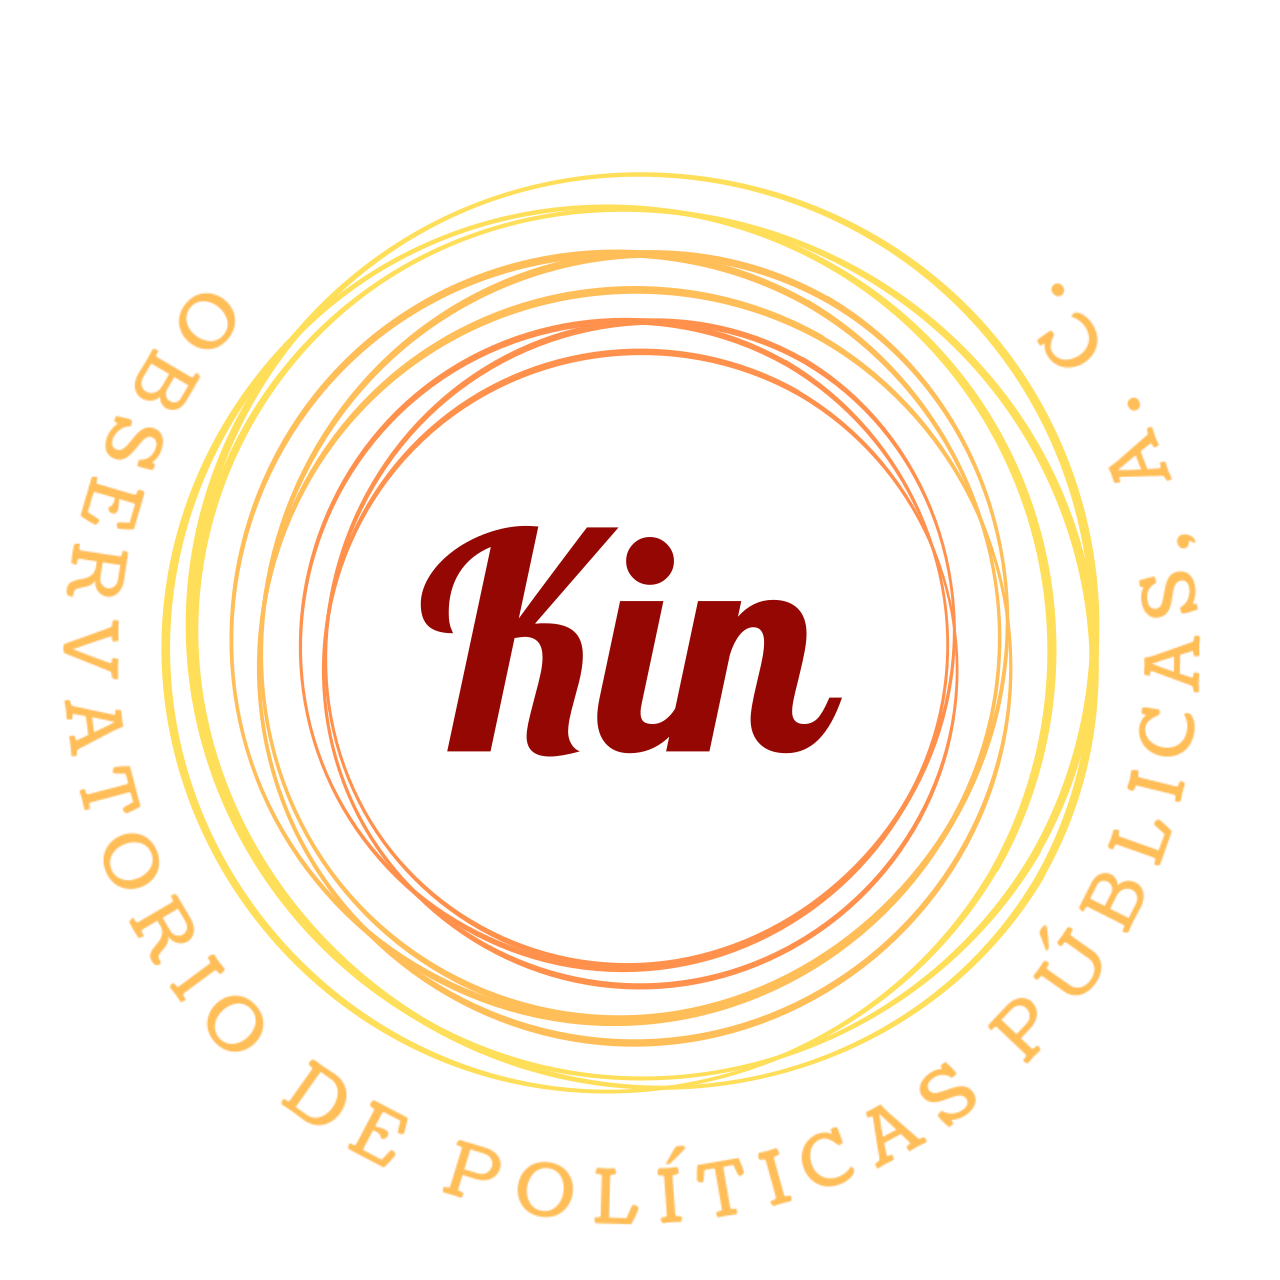 OBSERVATORIO DE POLÍTICAS PÚBLICAS, A. C.'s web page